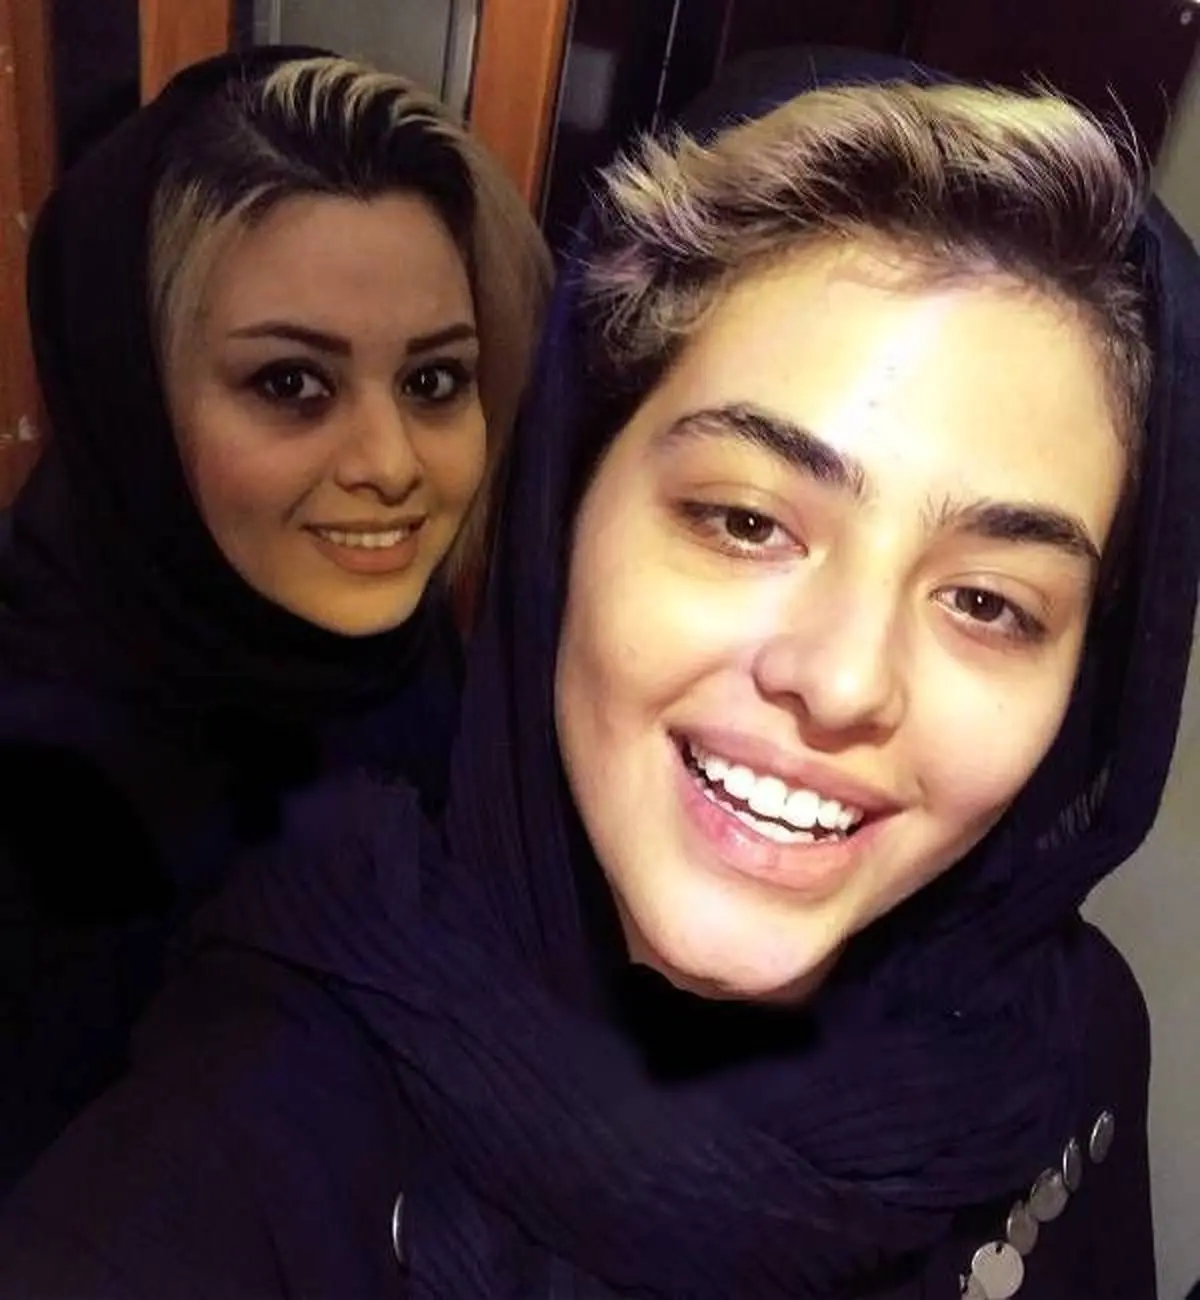 عکس لورفته و بی حجاب ریحانه پارسا و دختر مهران غفوریان در مهمانی خصوصی + بیوگرافی 